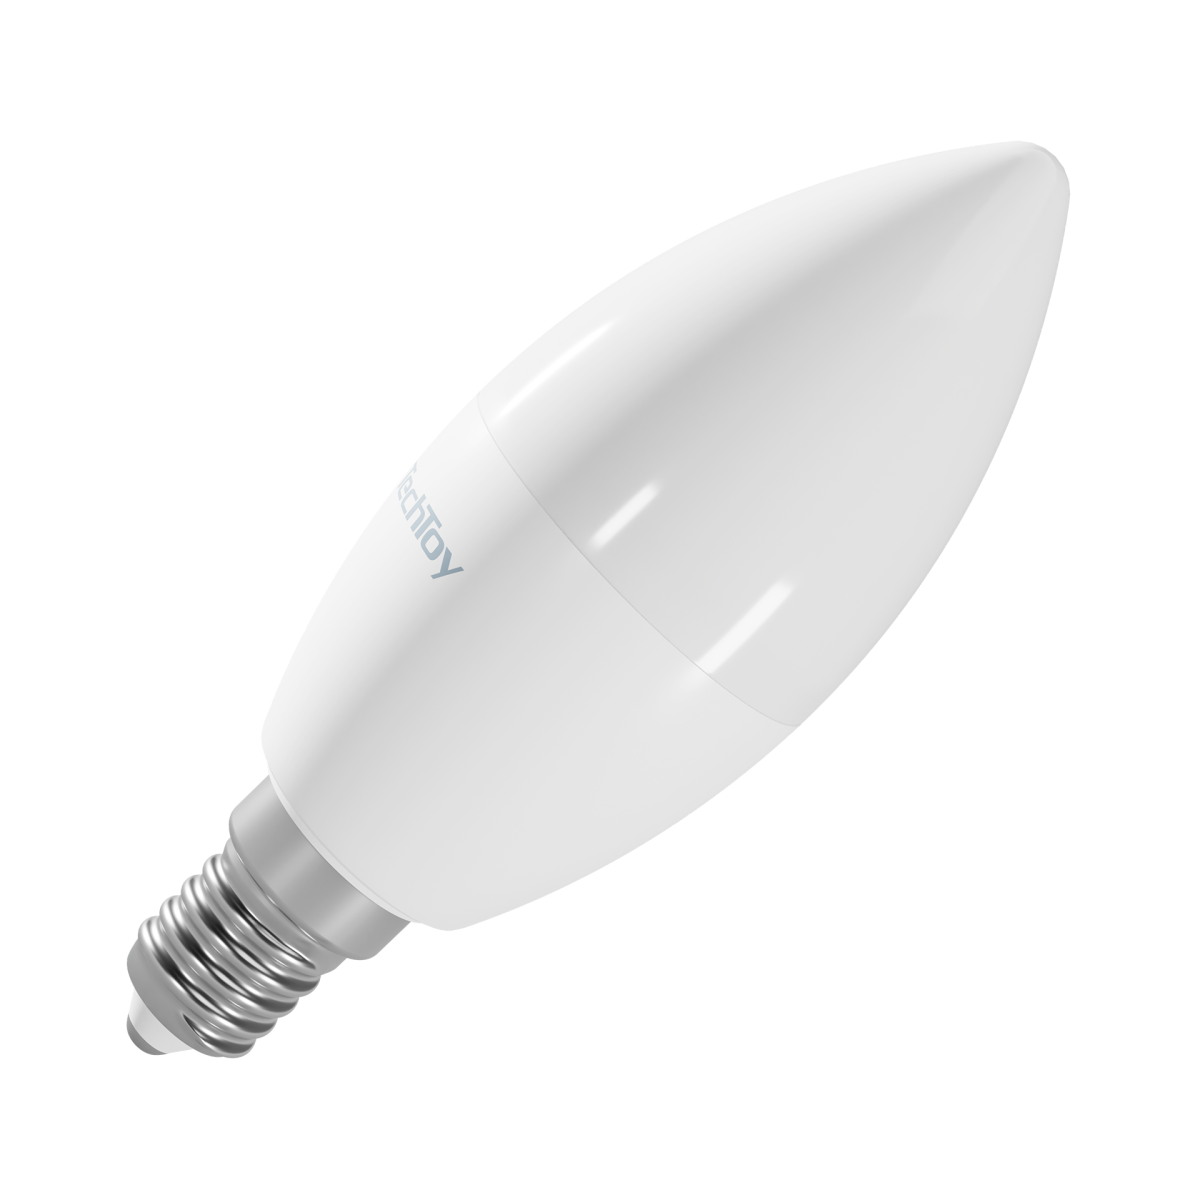 Becul TechToy Smart Bulb Model RGB 6W E14 ZigBee de Tesla Smart